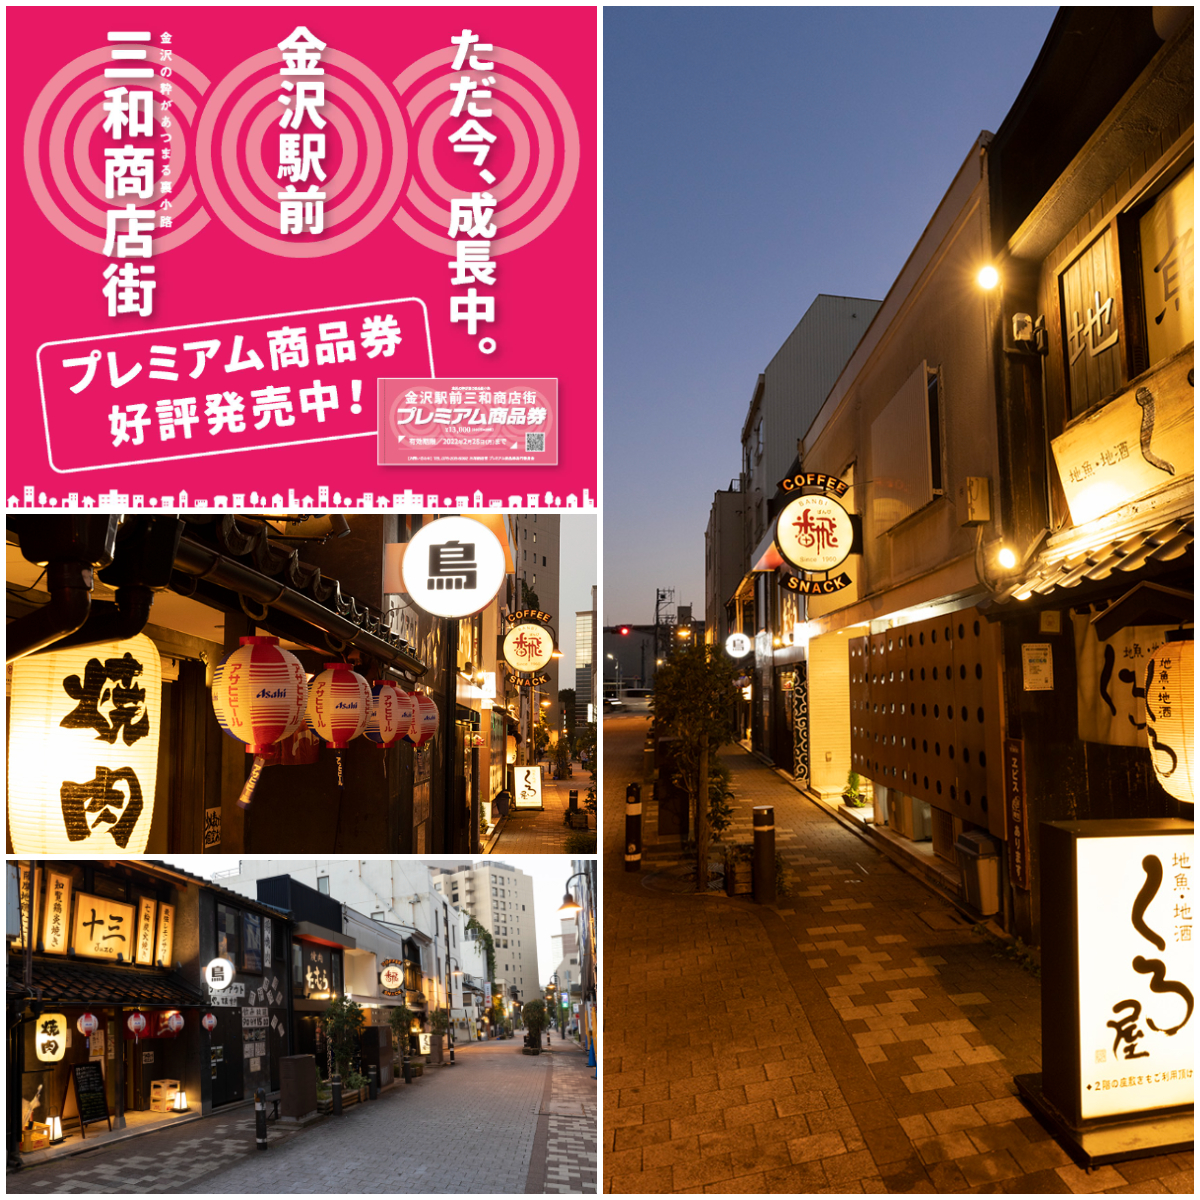 話題のグルメスポット『金沢駅前三和商店街』にて使用できるお得なプレミアム商品券を発売。